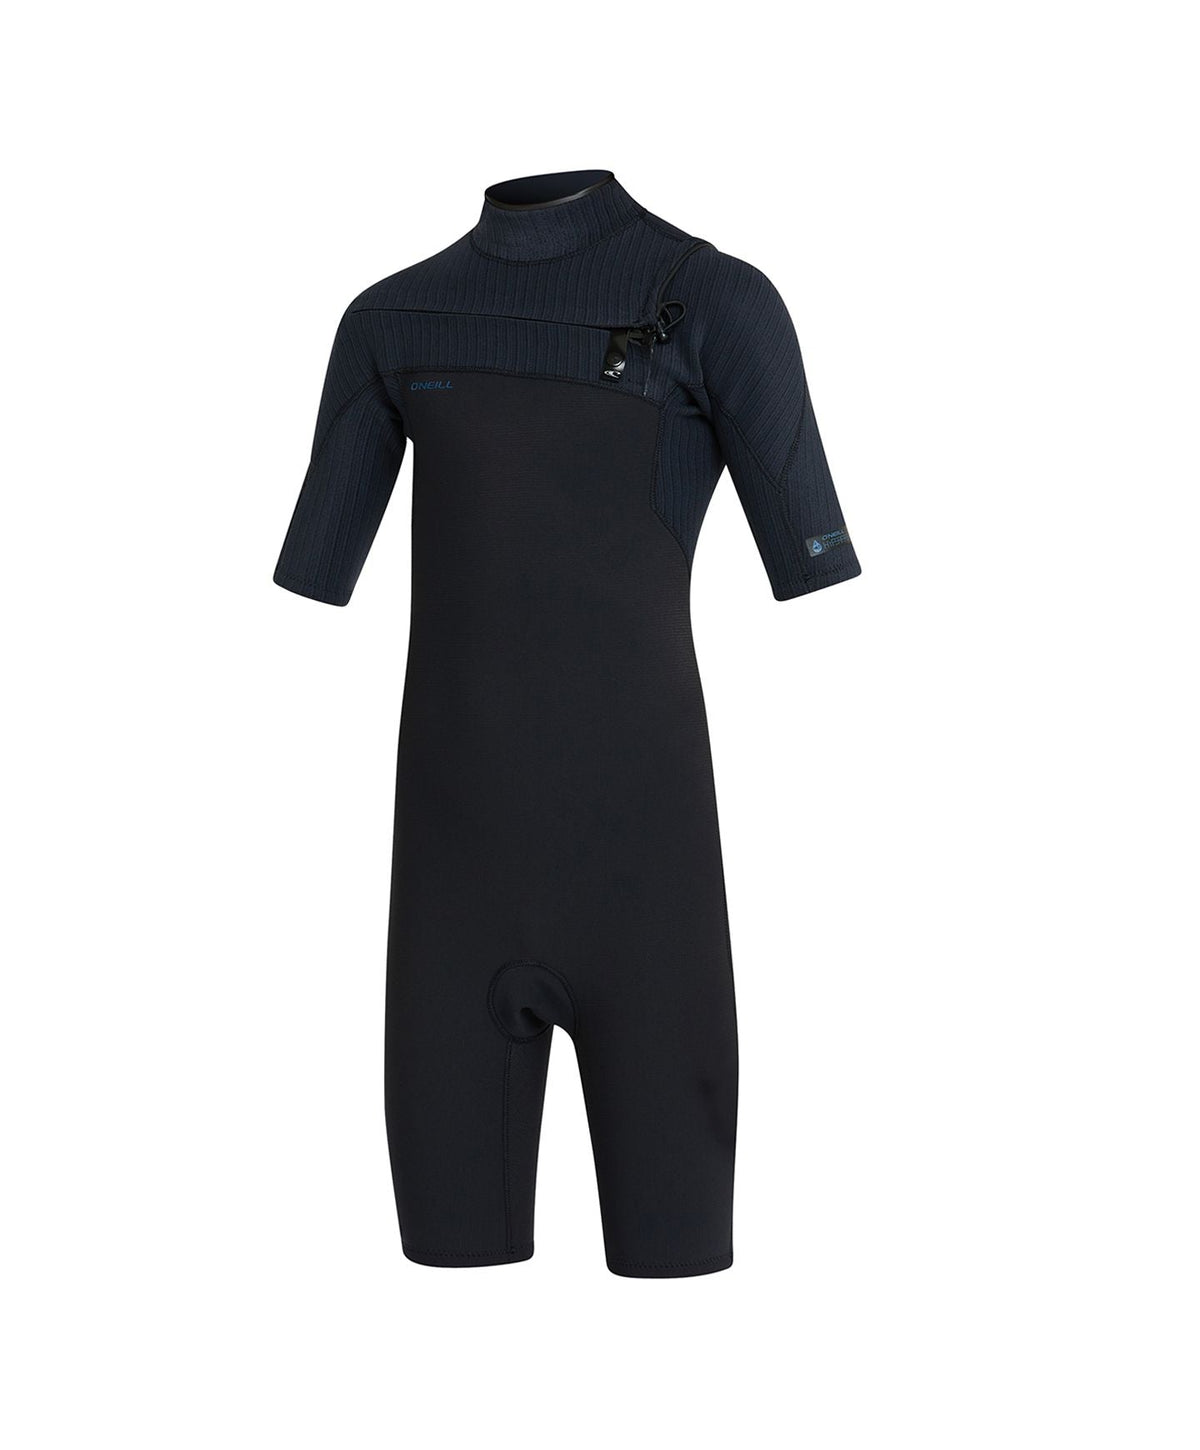 Kid's Hyperfreak 2mm Short Sleeve Springsuit Chest Zip Wetsuit - Black